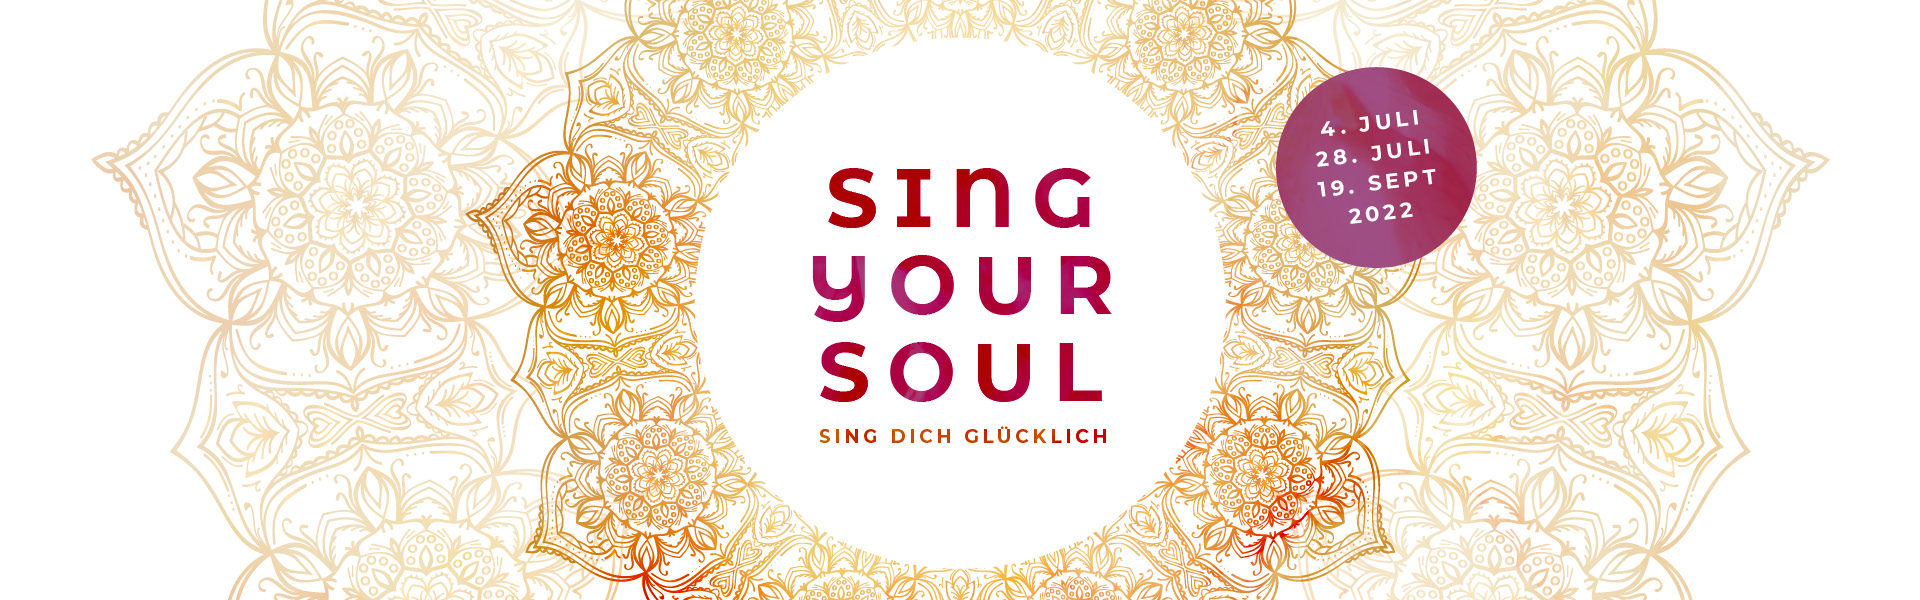 Sing your Soul – Sing dich glücklich